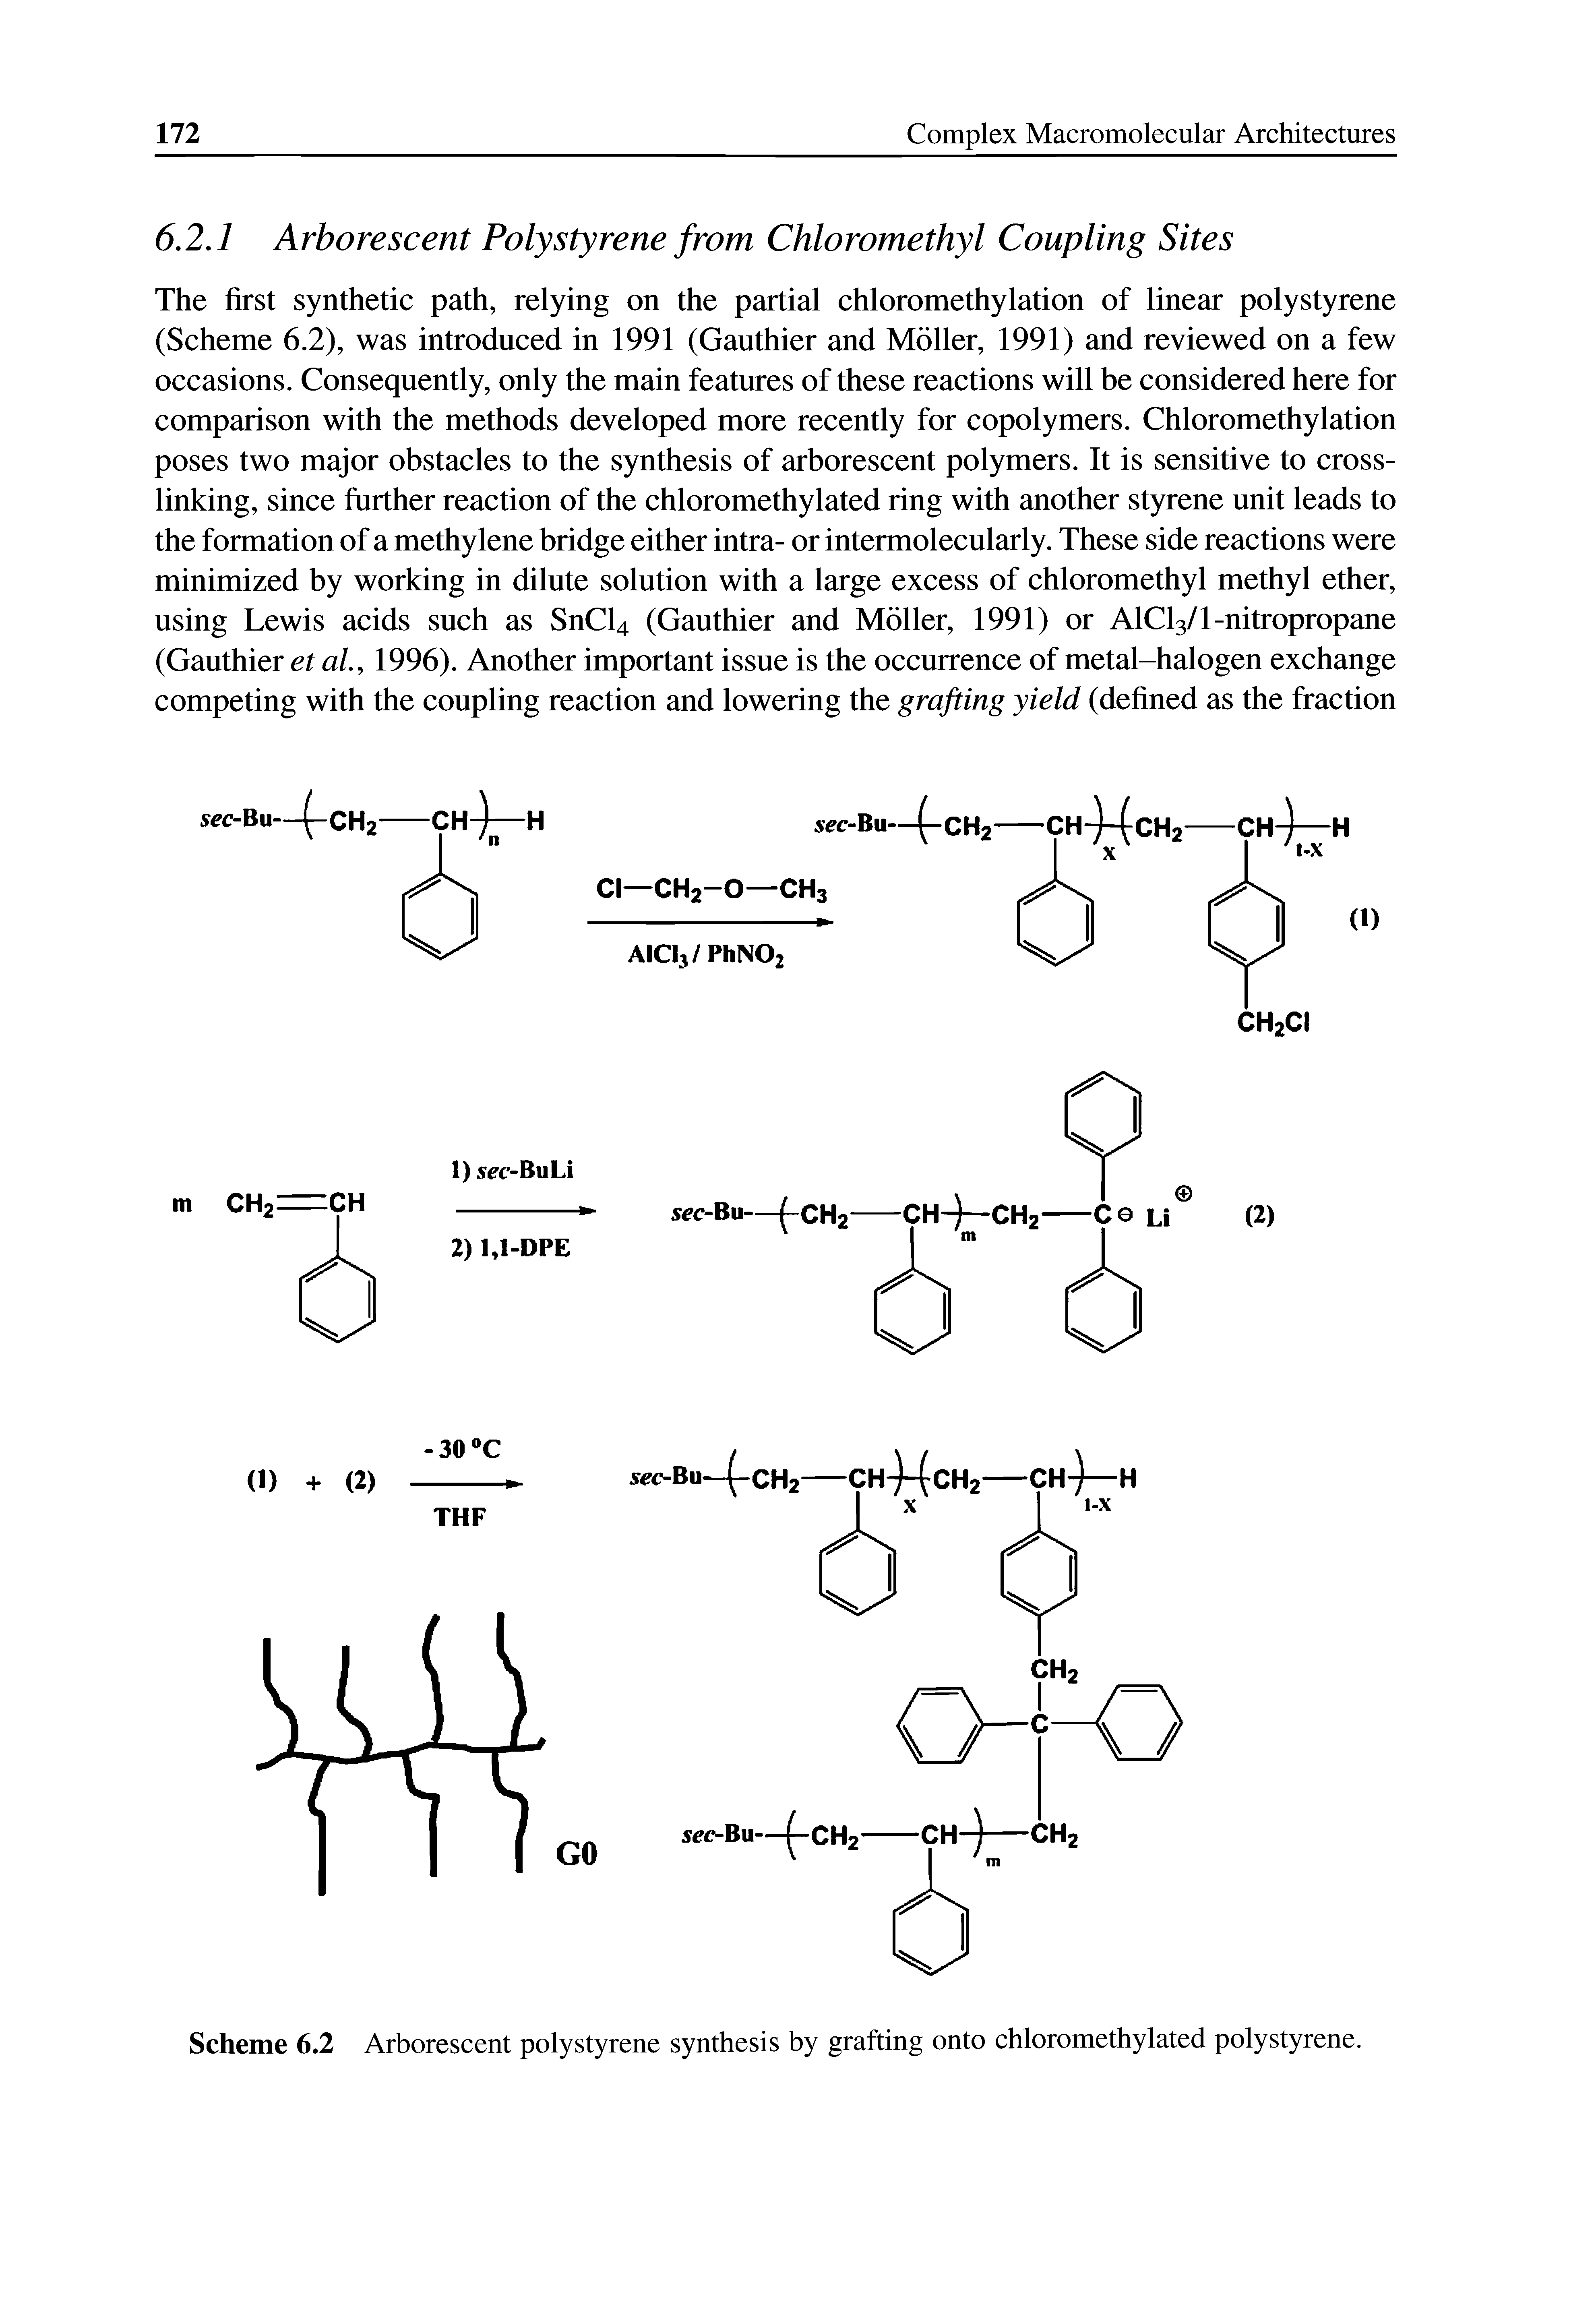 Scheme 6.2 Arborescent polystyrene synthesis by grafting onto chloromethylated polystyrene.